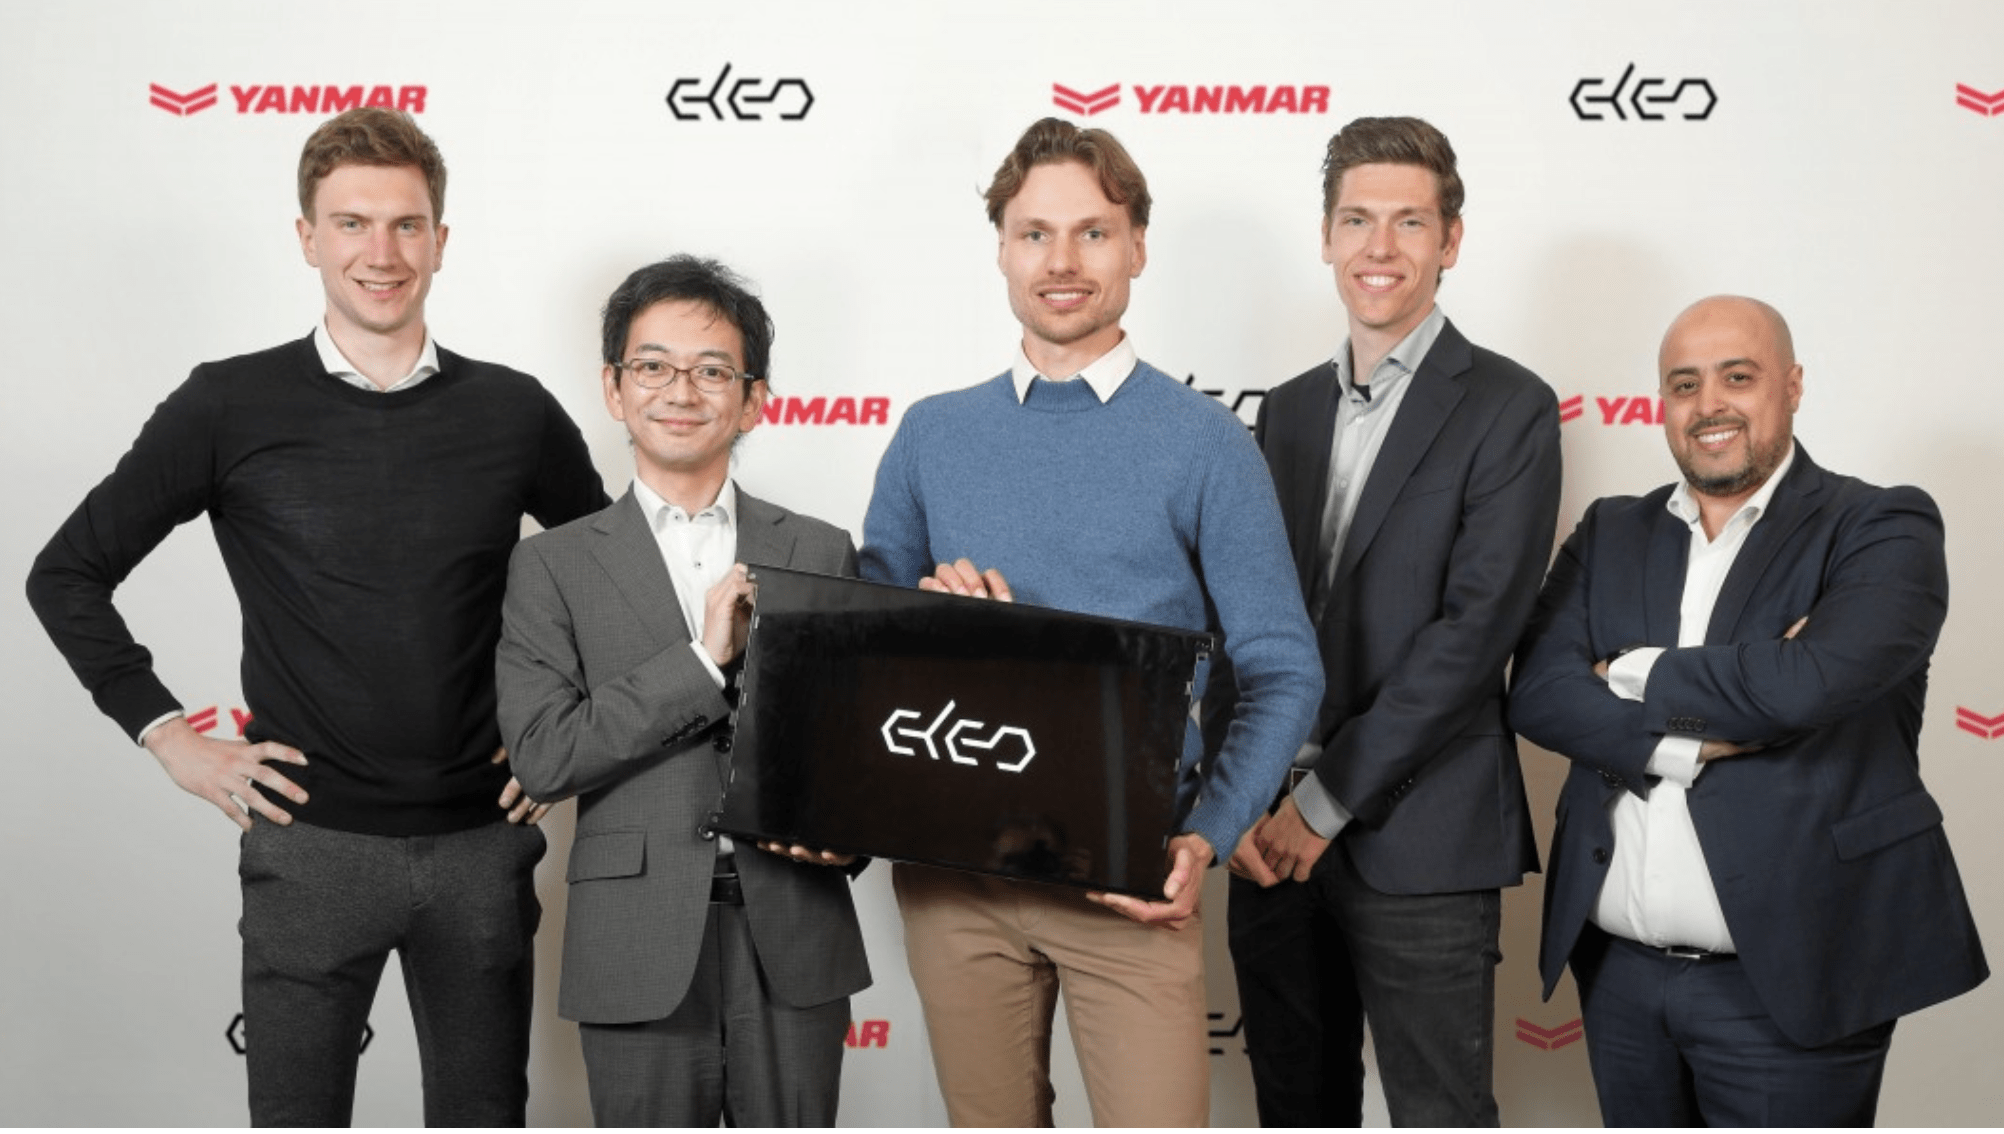 Meerderheid aandelen Helmondse start-up ELEO in Japanse handen